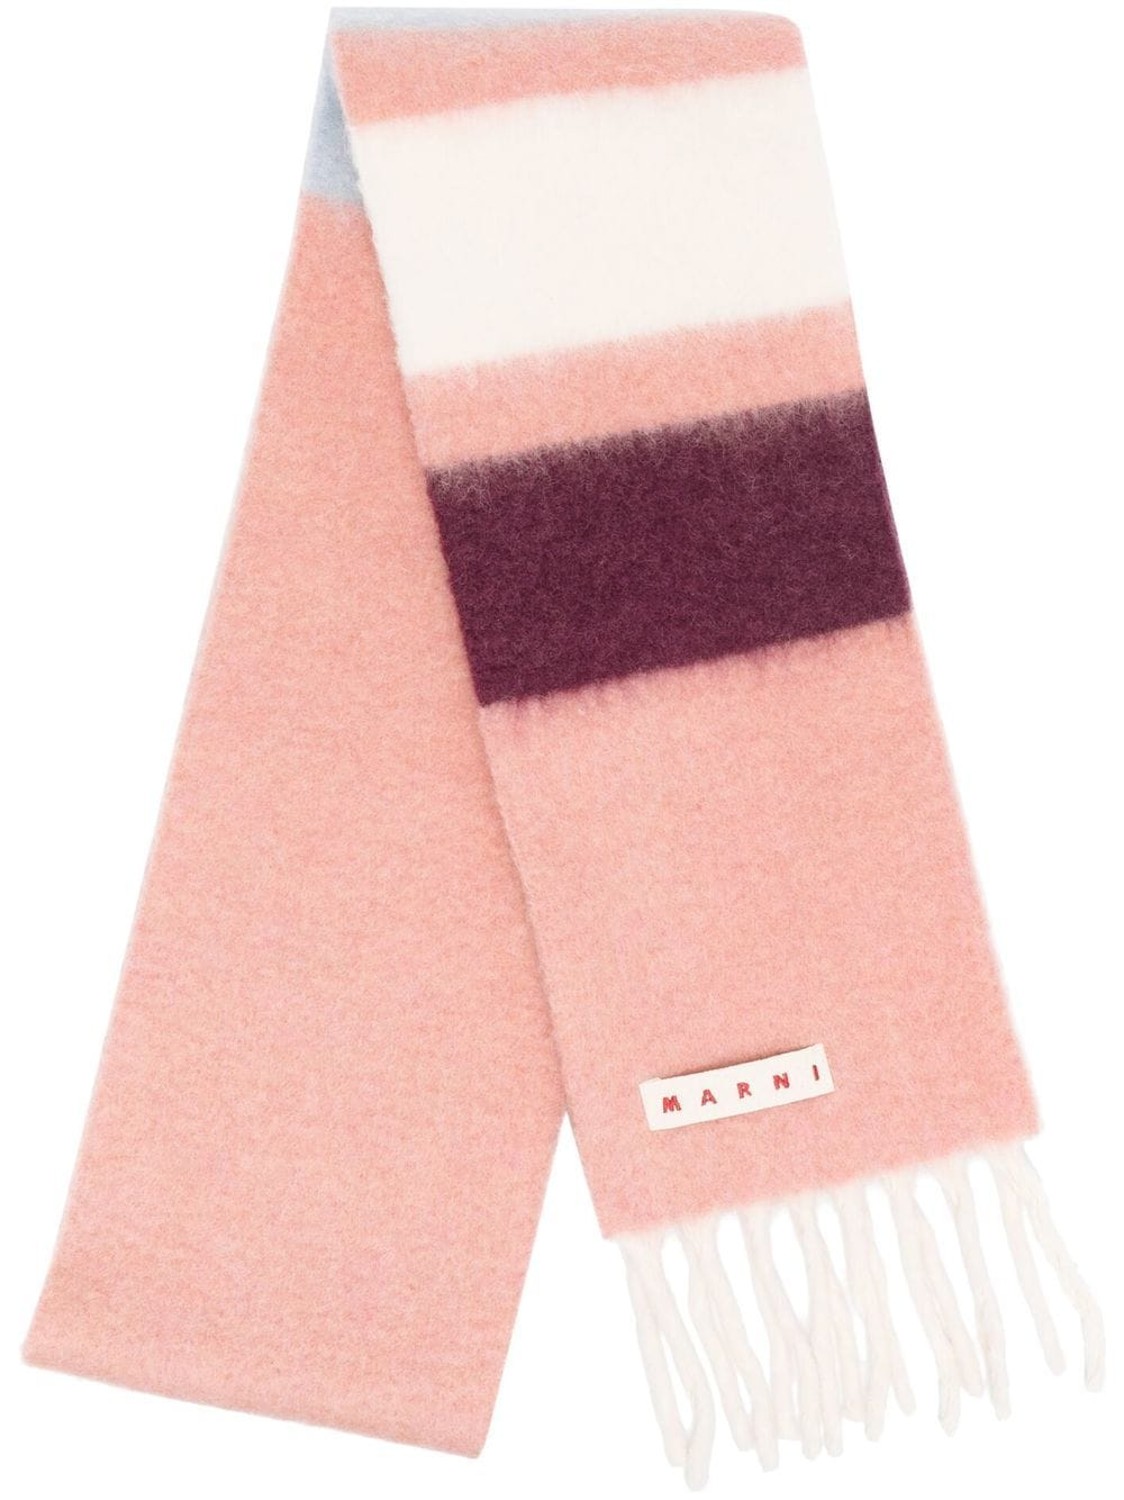 shop Marni  Accessori: Accessori Marni, sciarpa, in alpaca rosa a righe, 17 x 264 cm.

Composizione: 100% alpaca. number 2491